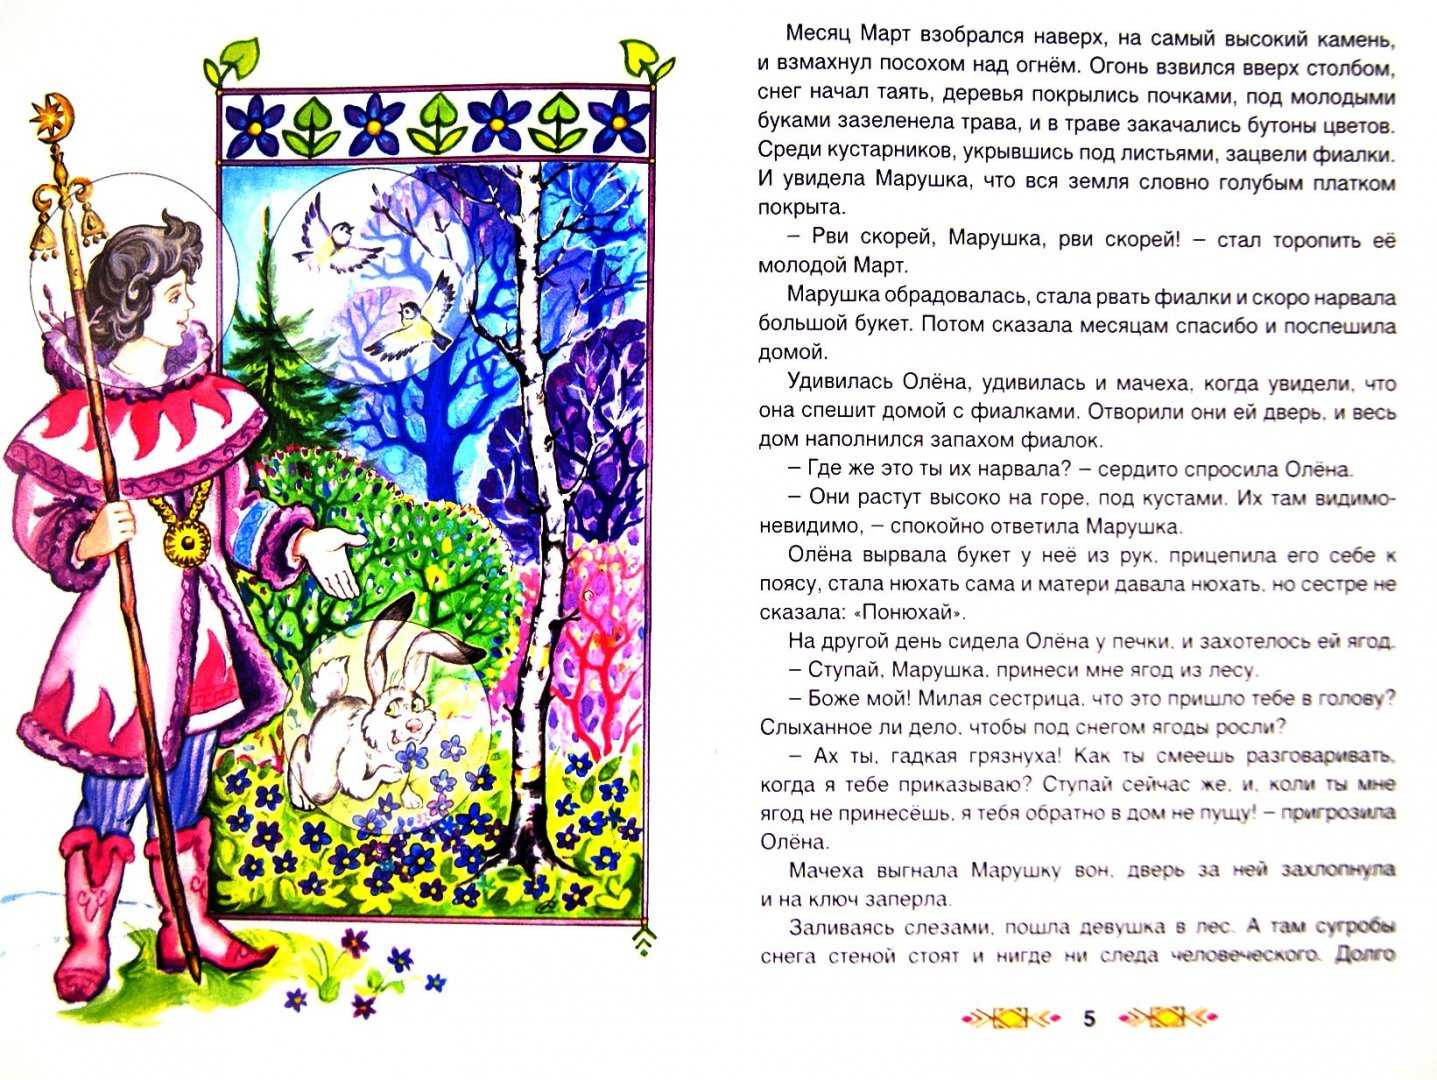 Русские народные сказки, детские рассказы, сказки мира, стихотворения, загадки!